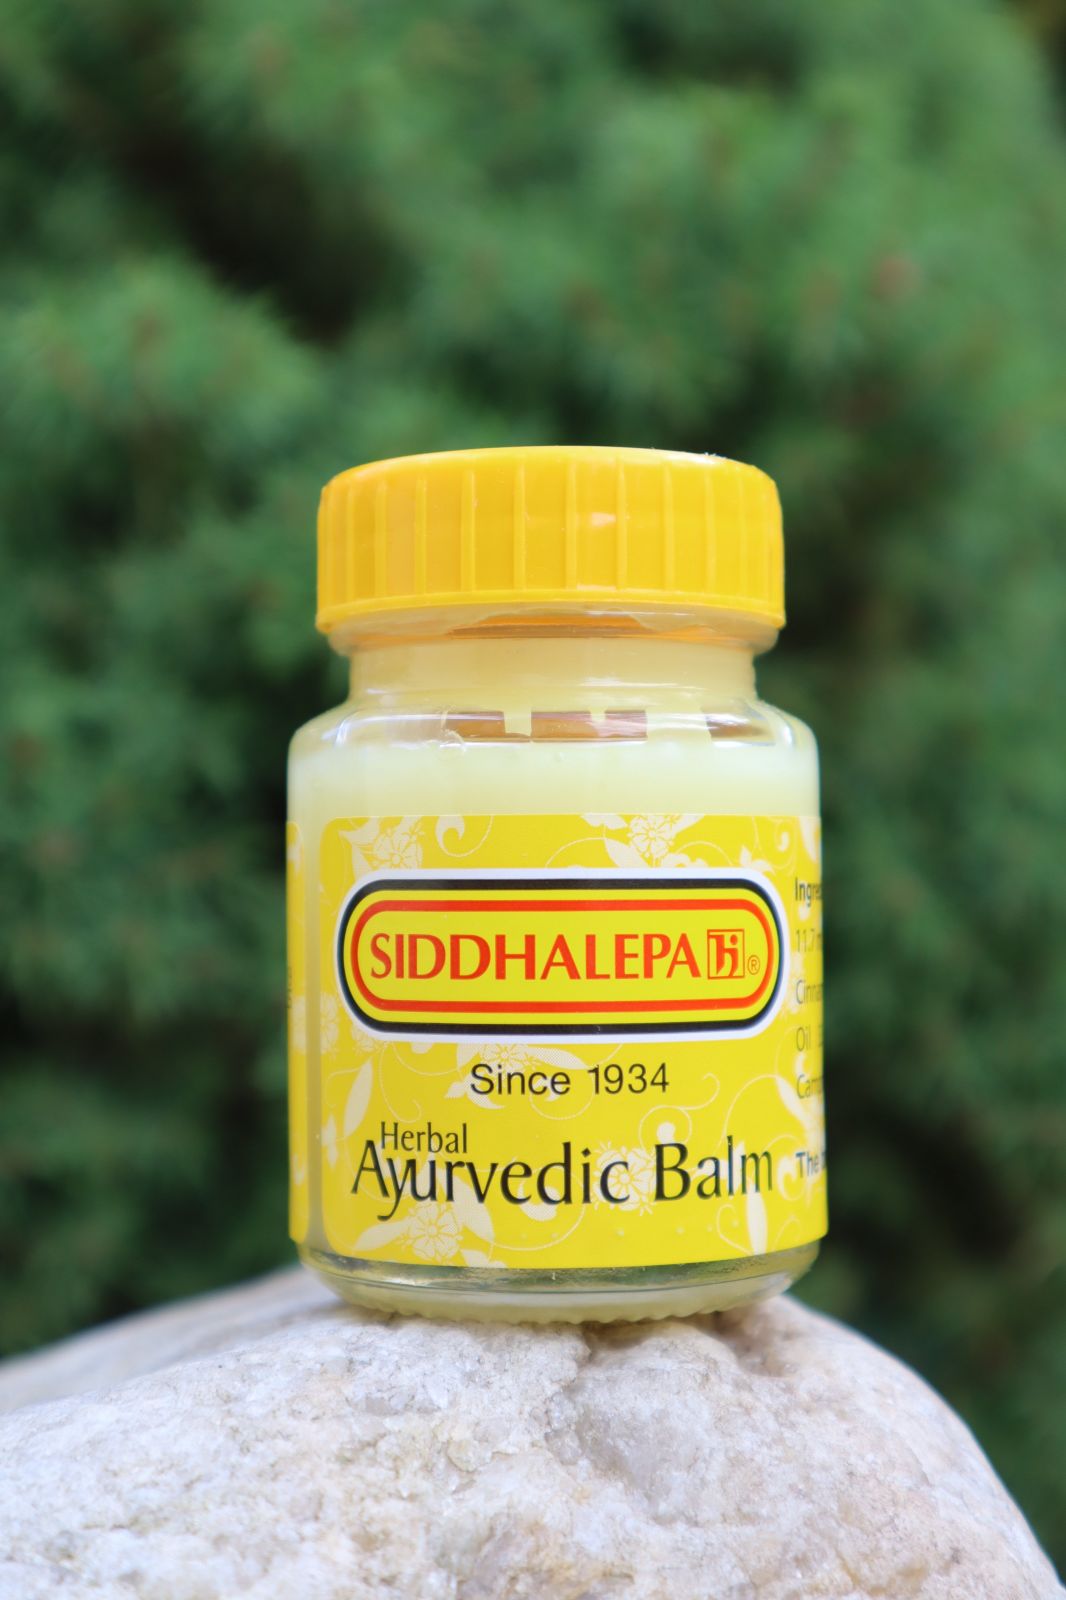 Ayurvédskej BYLINNÝ BALZAM Siddhalepa 100 g proti bolesti svalov, kĺbov, hlavy, bolesti v krku, pomoc pri chrípke, pri pichnutie hmyzom a mnoho ďalšieho ......